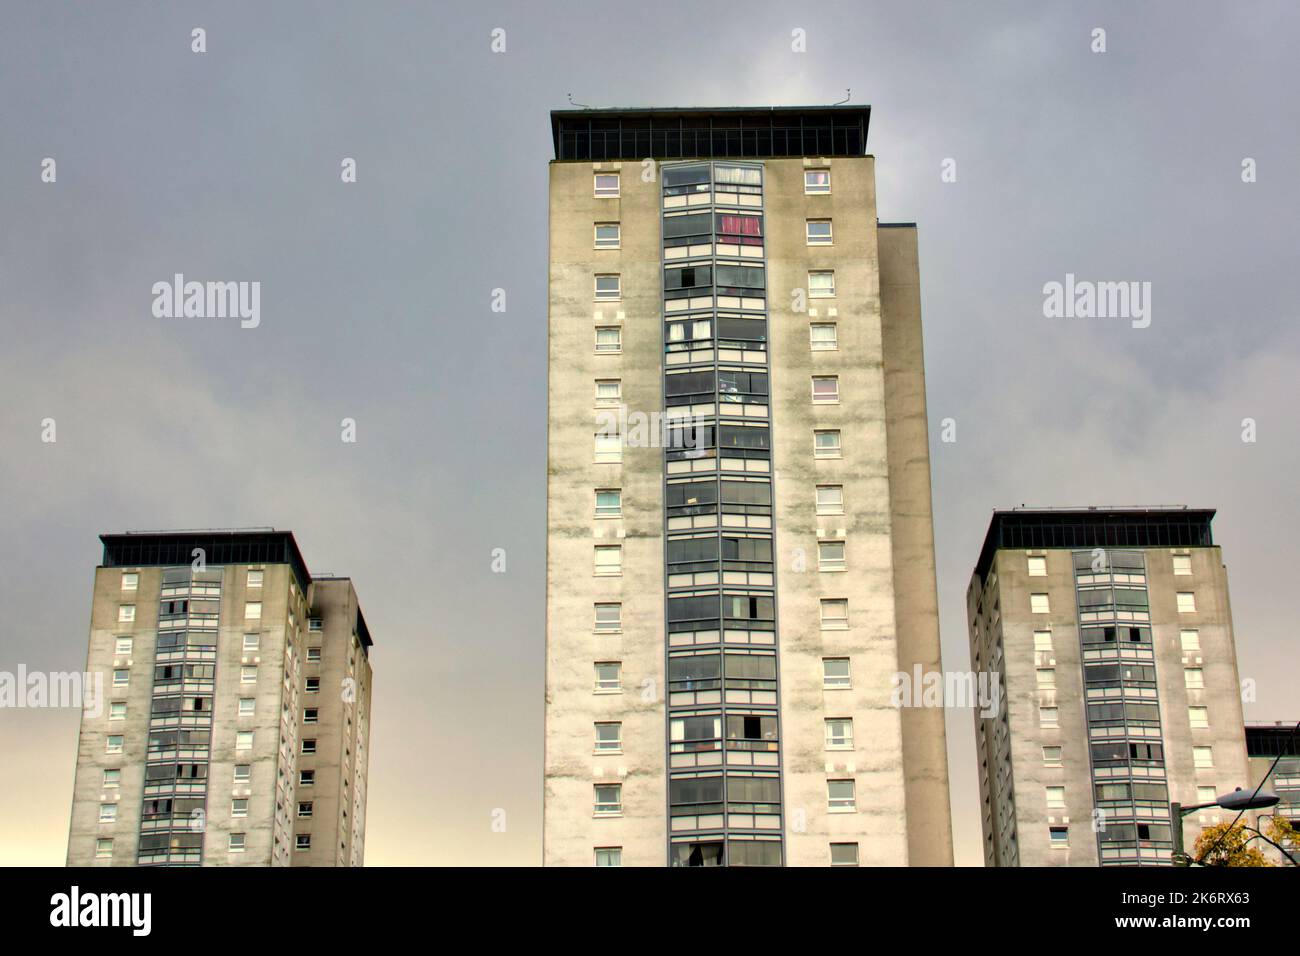 Lincoln avenue council che ospita architettura brutalista moderne torri in cemento Glasgow, Scozia, Regno Unito Foto Stock